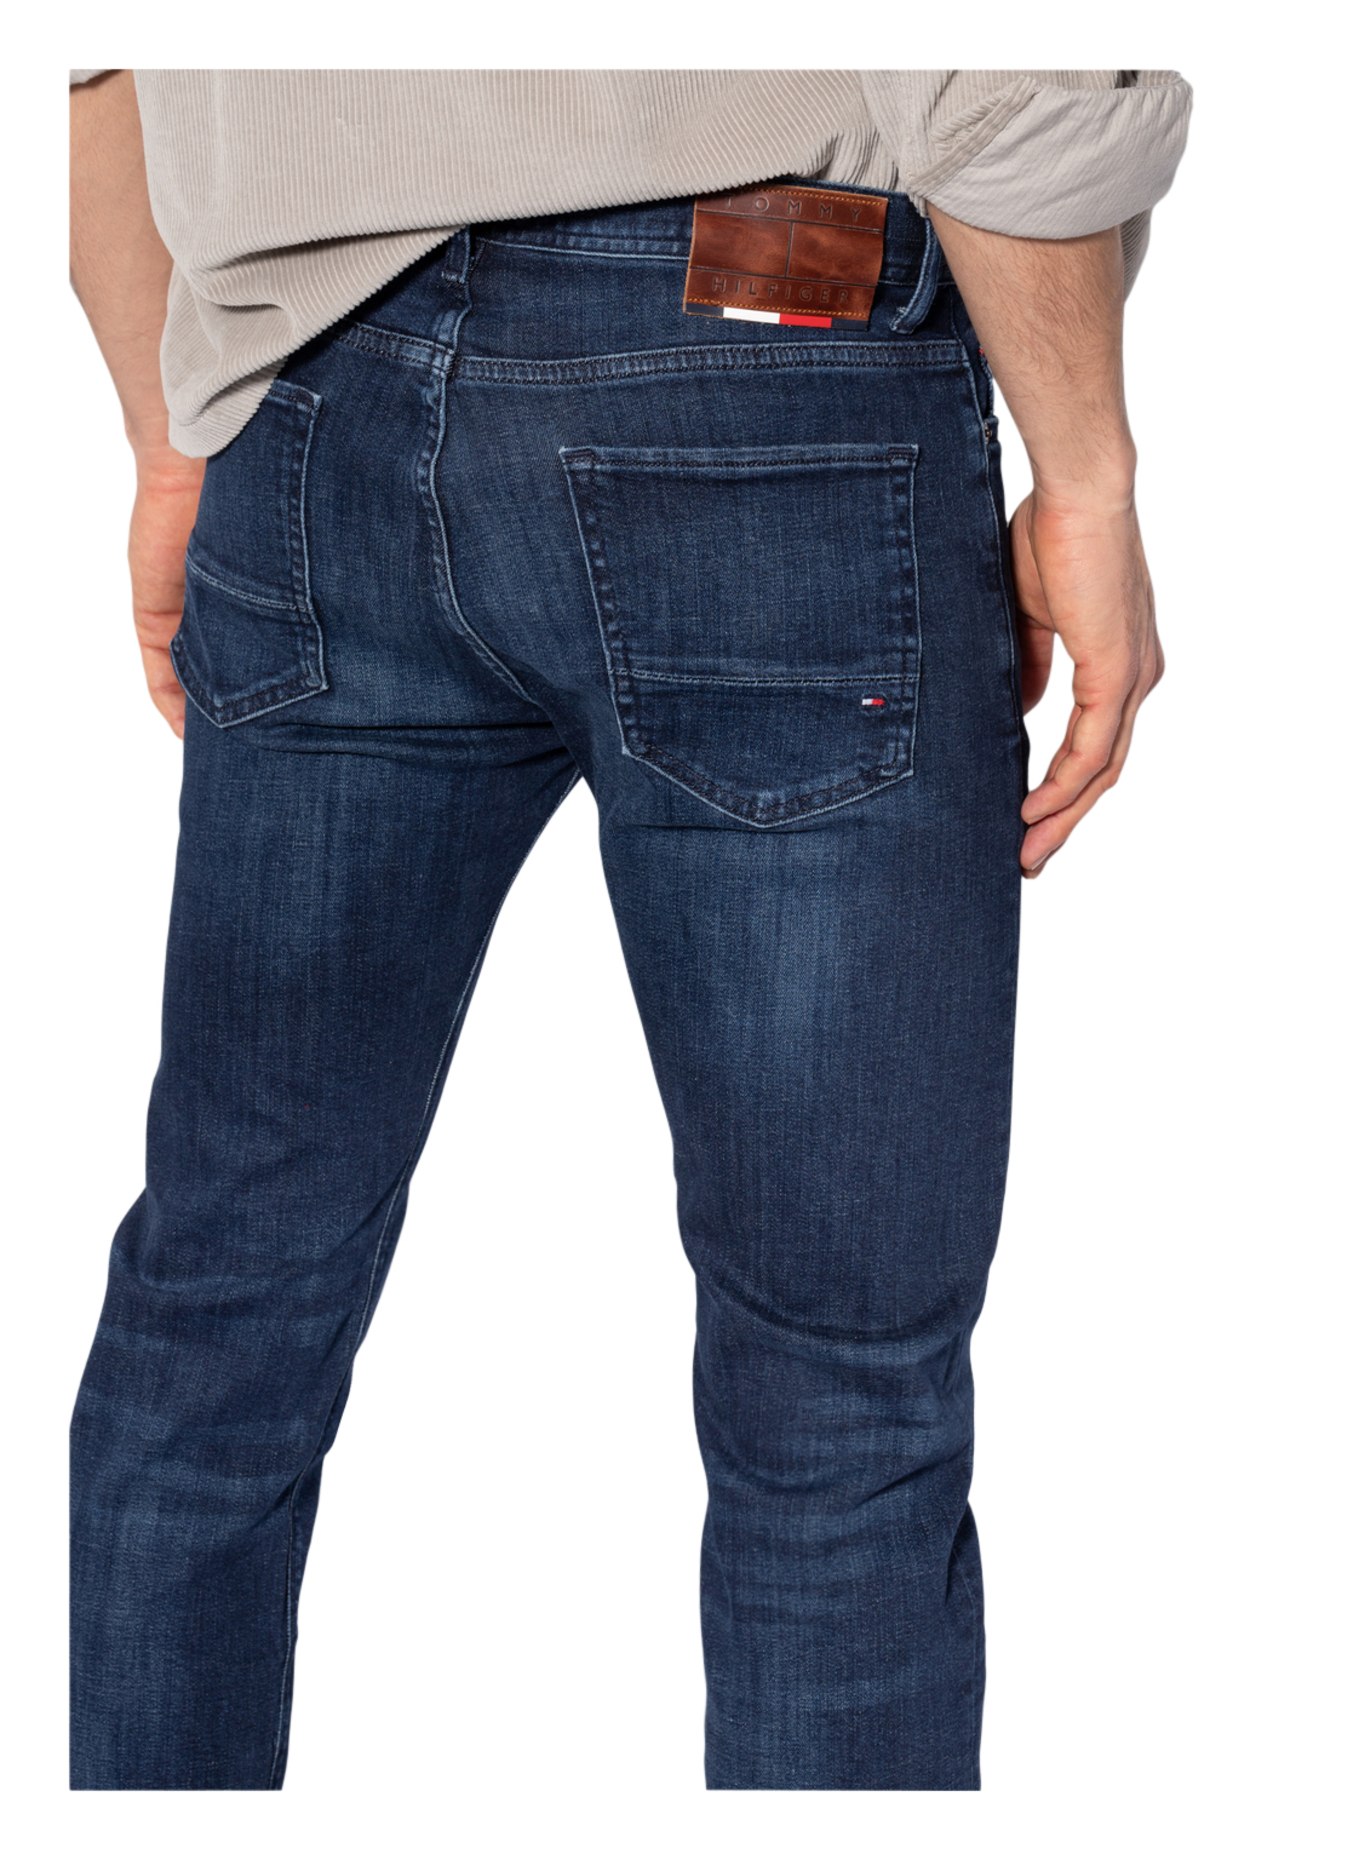 TOMMY HILFIGER Jeans CORE BLEECKER Slim Fit, Farbe: 1BS Bridger Indigo (Bild 7)